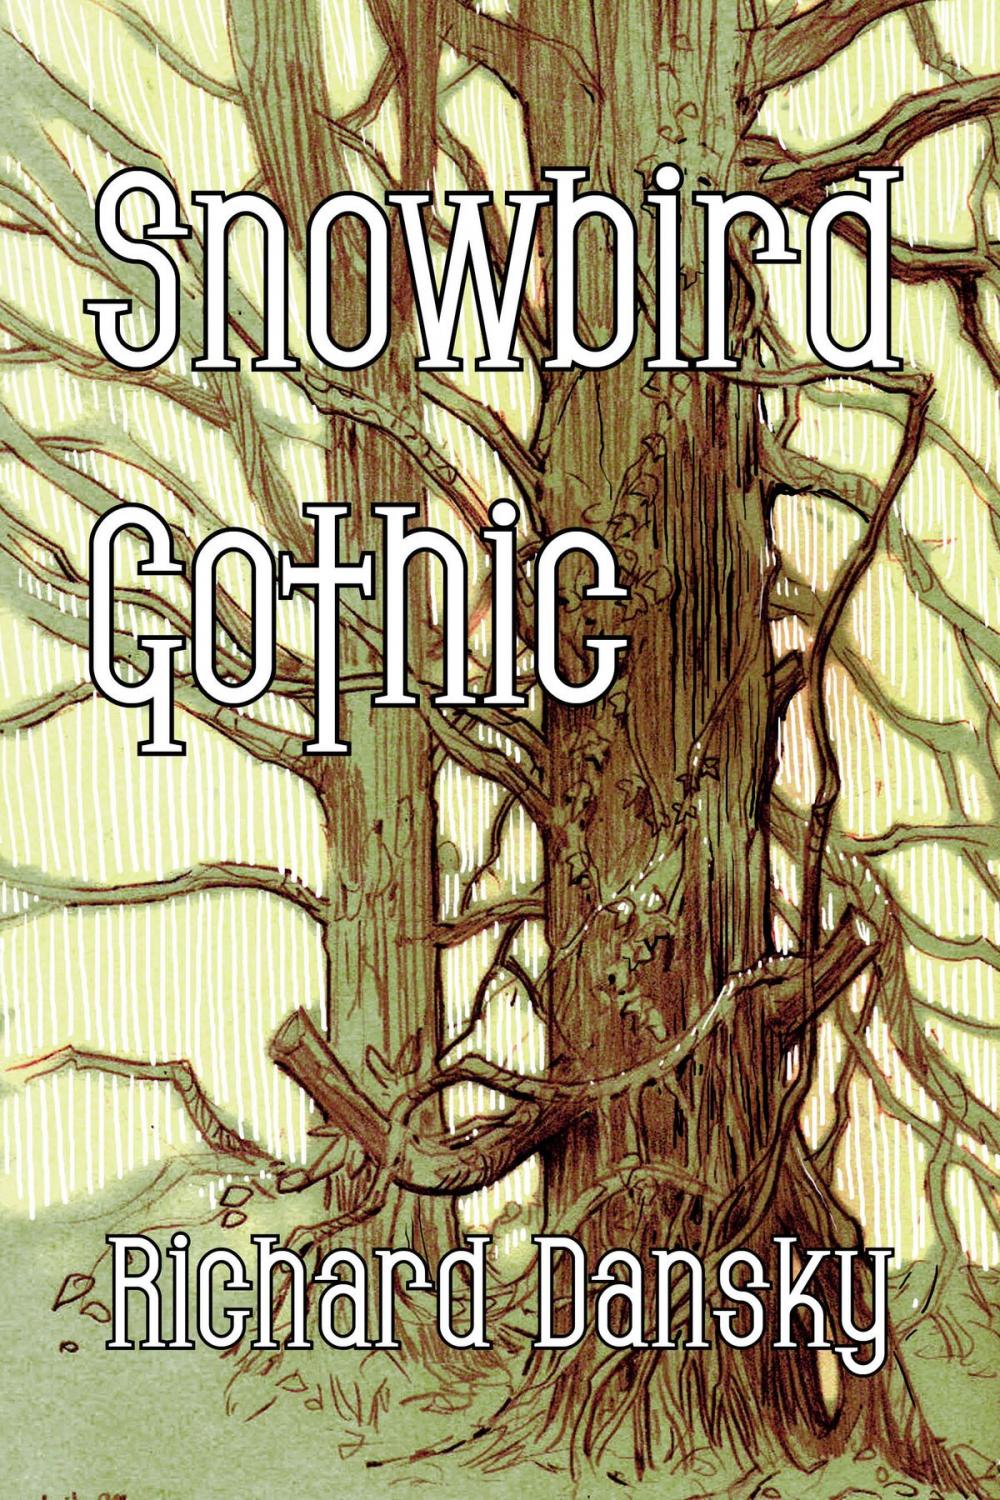 Big bigCover of Snowbird Gothic